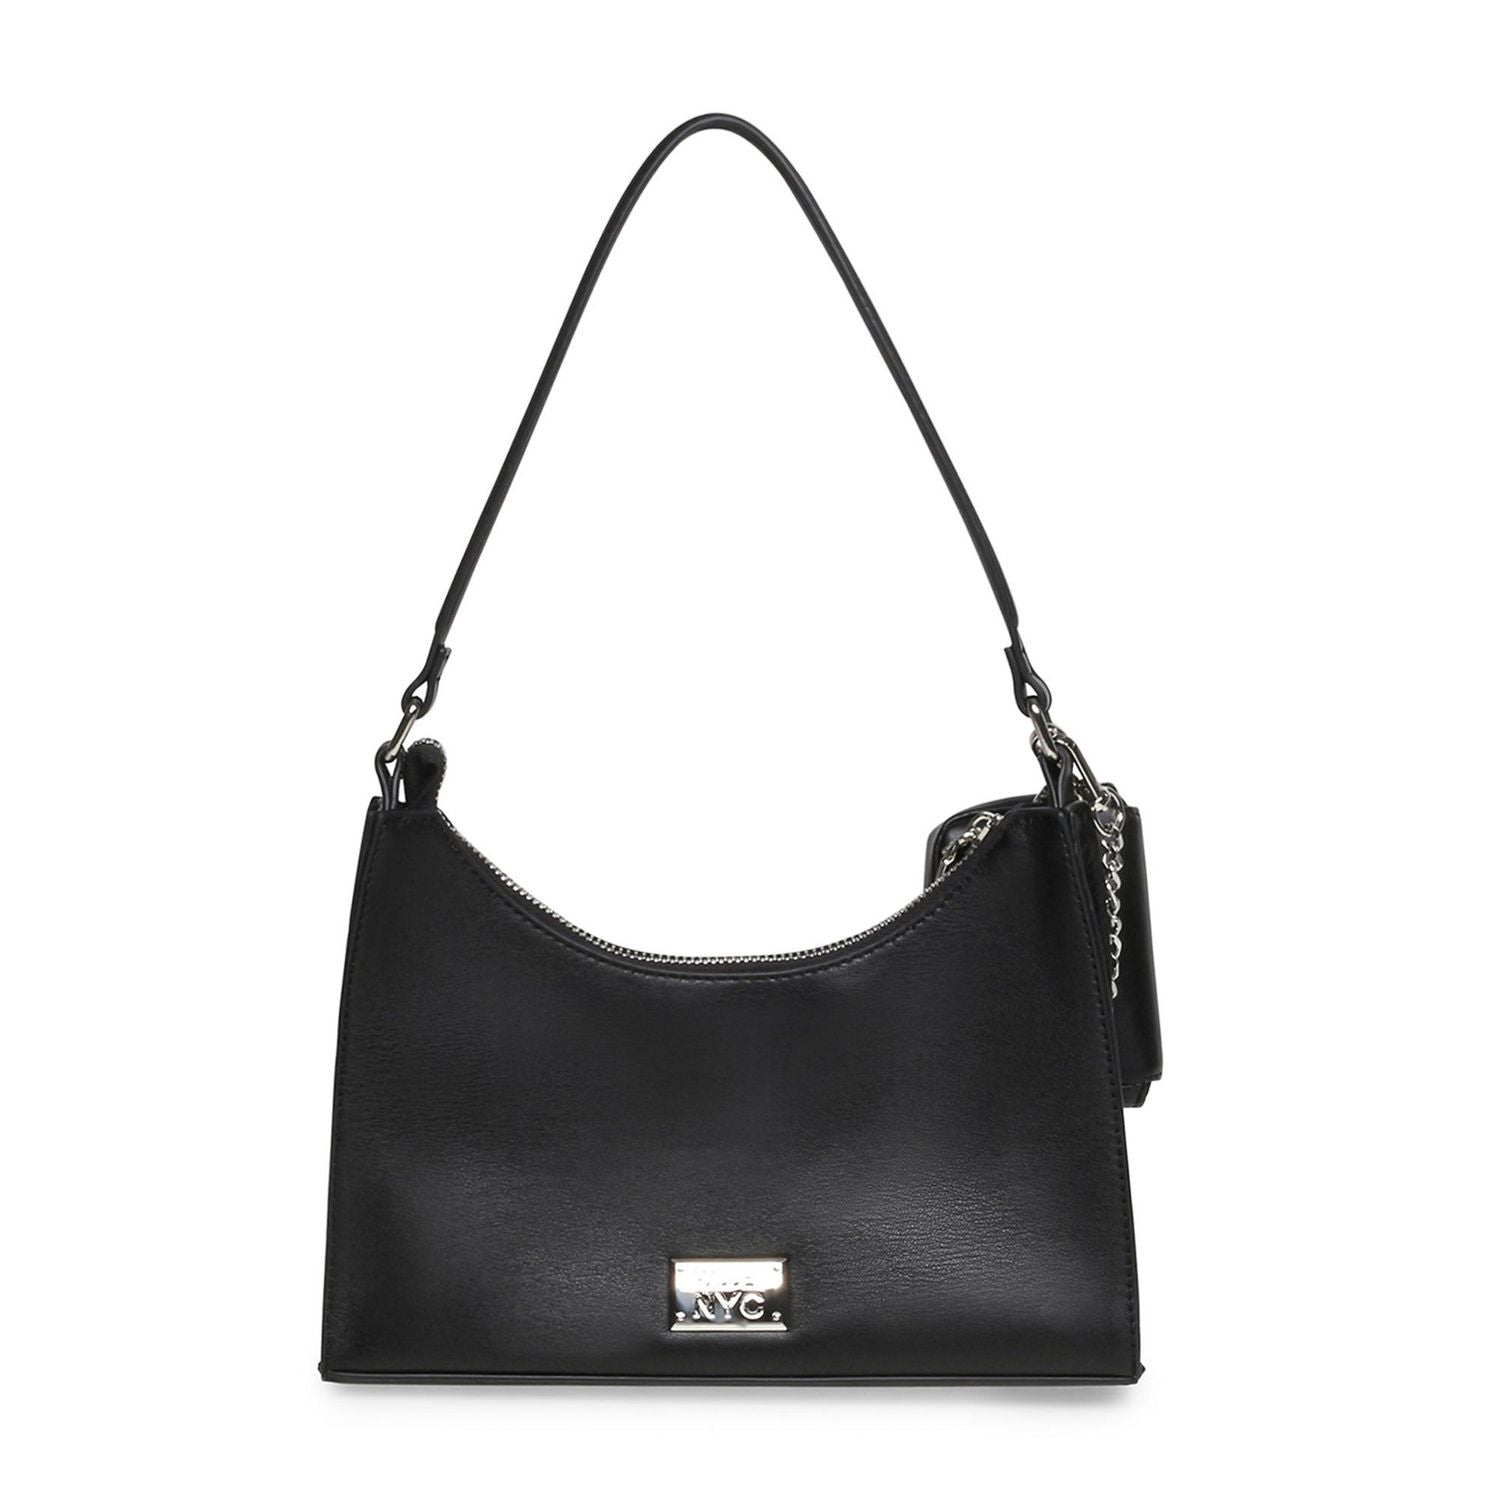 PEPPER Bag Black | Women's Crossbody Camera Bag – Steve Madden